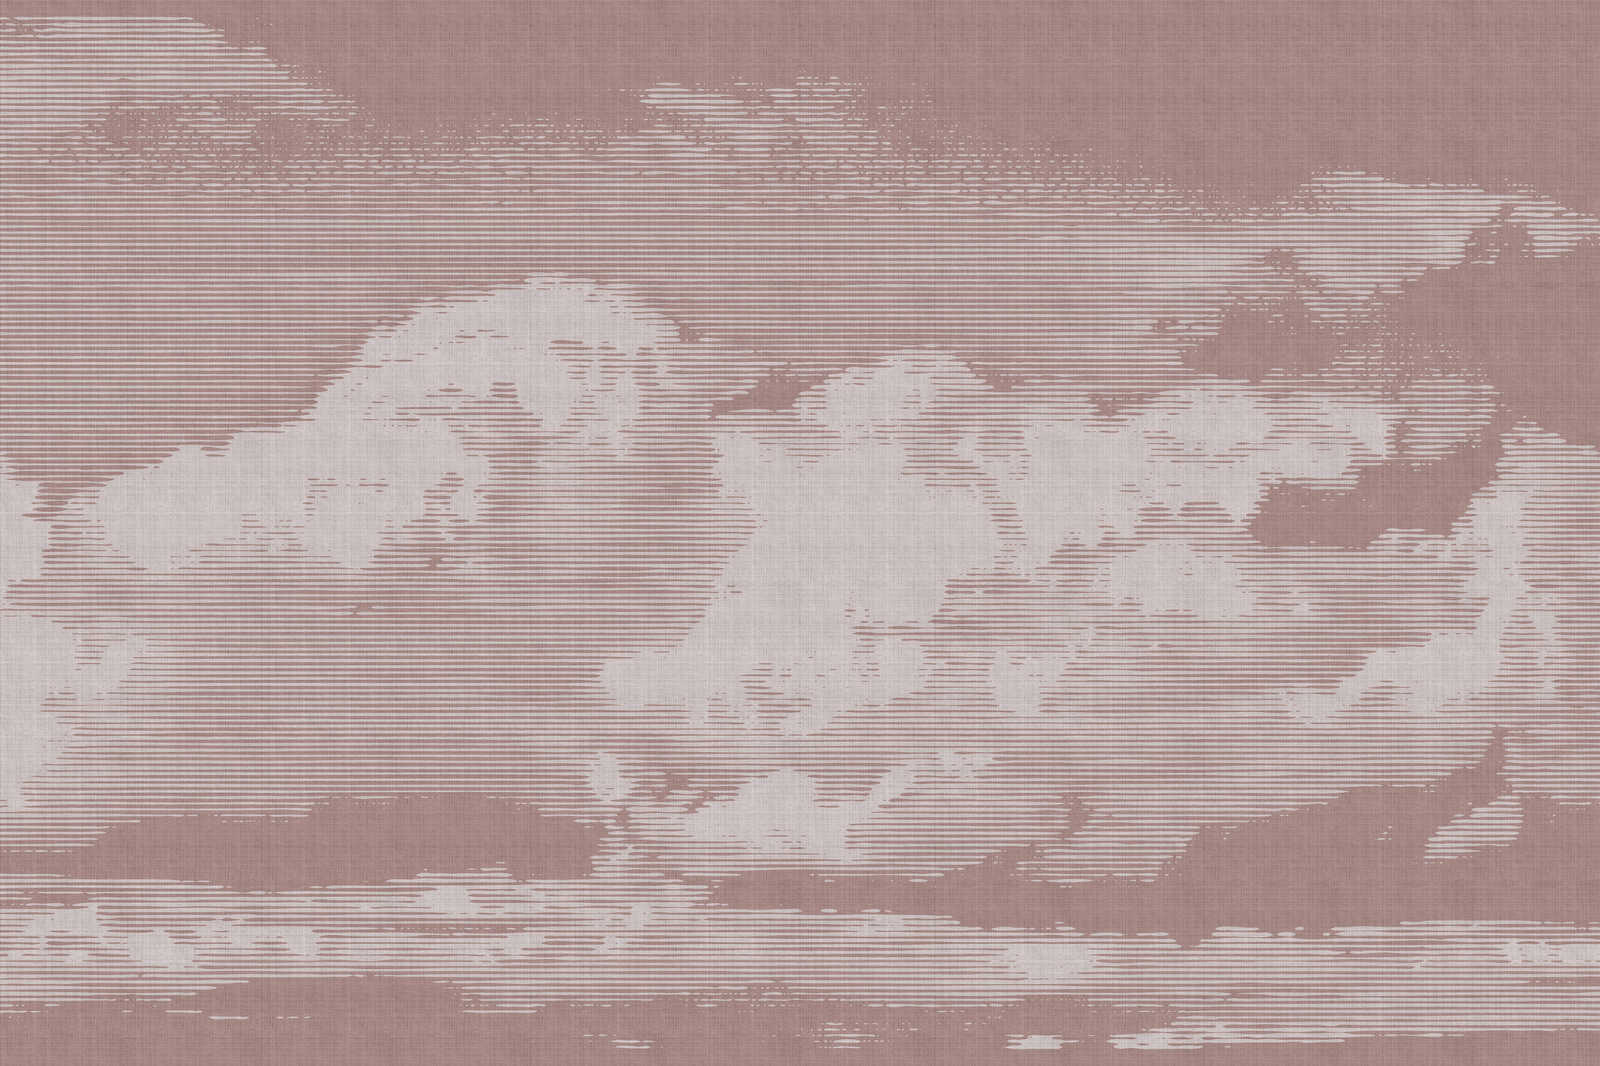             Clouds 3 - Himmlisches Leinwandbild mit Wolkenmotiv - Naturleinen Optik – 0,90 m x 0,60 m
        